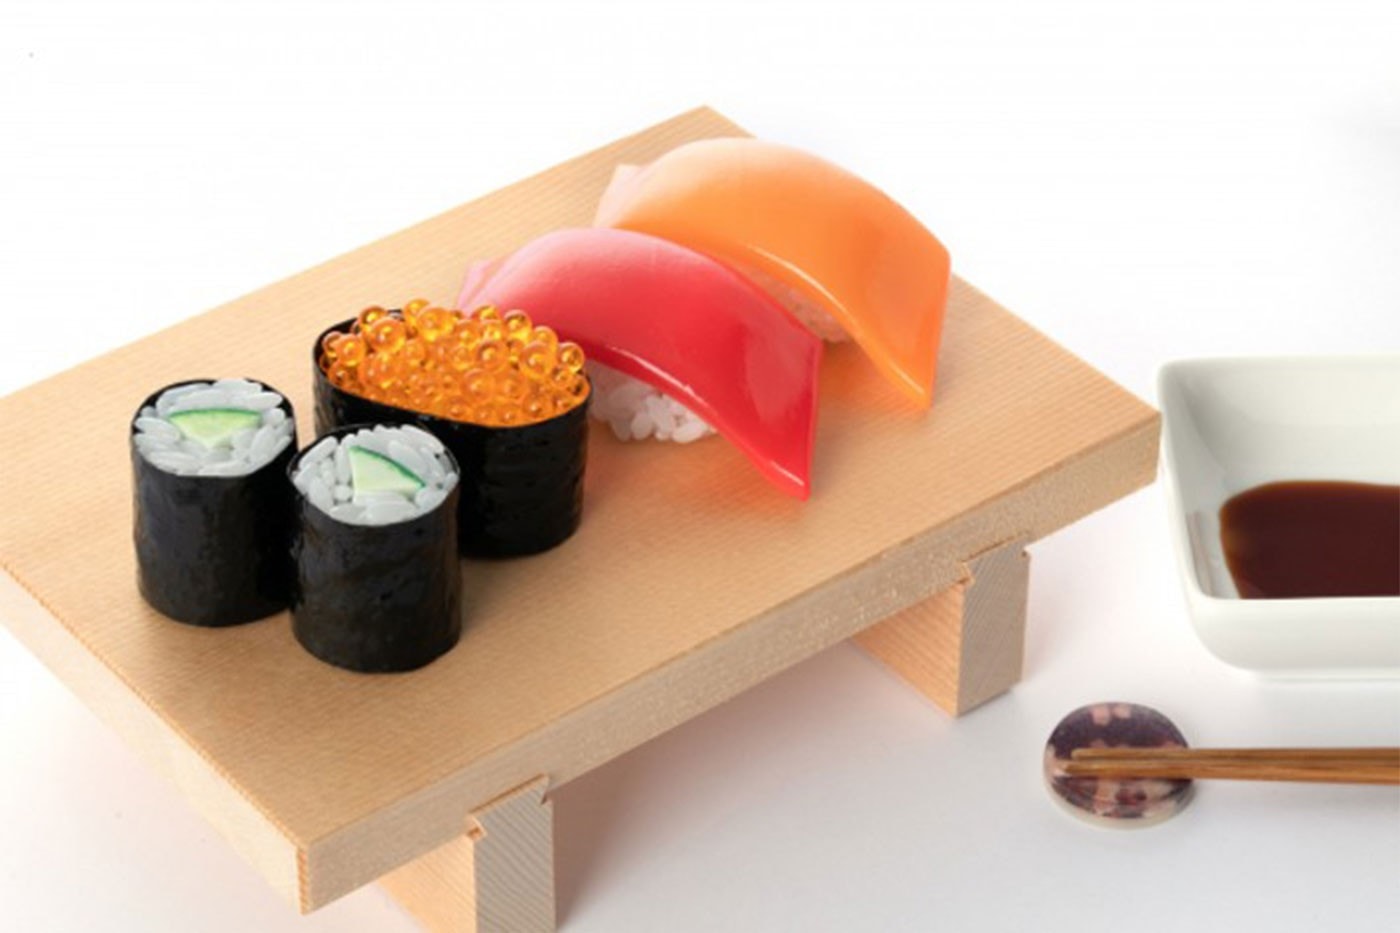 日本模型製造商 Syuto 推出擬真 1：1 黃瓜卷壽司模型